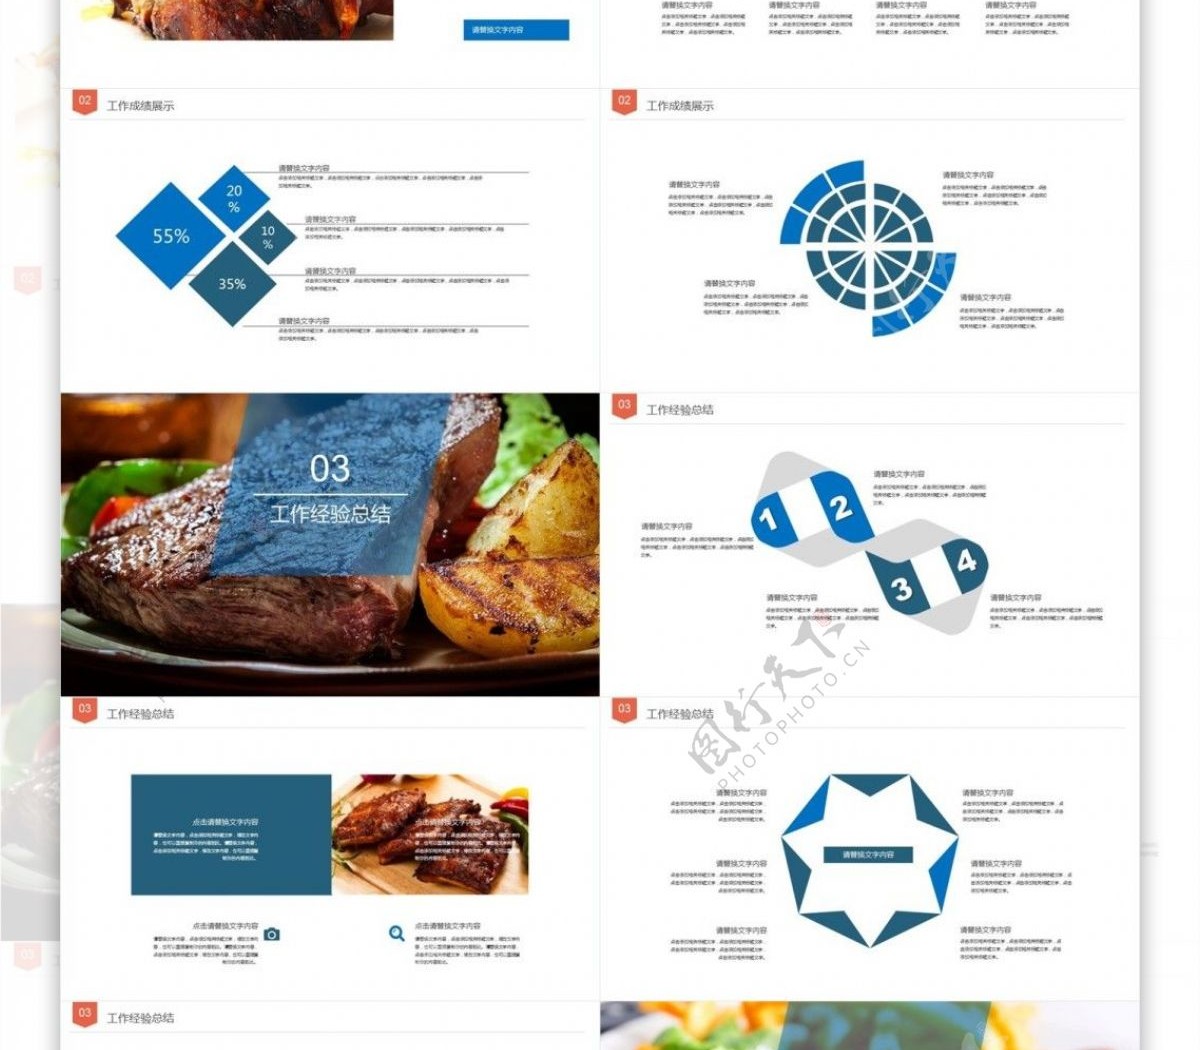 餐饮美食主题餐厅宣传美食介绍PPT模板